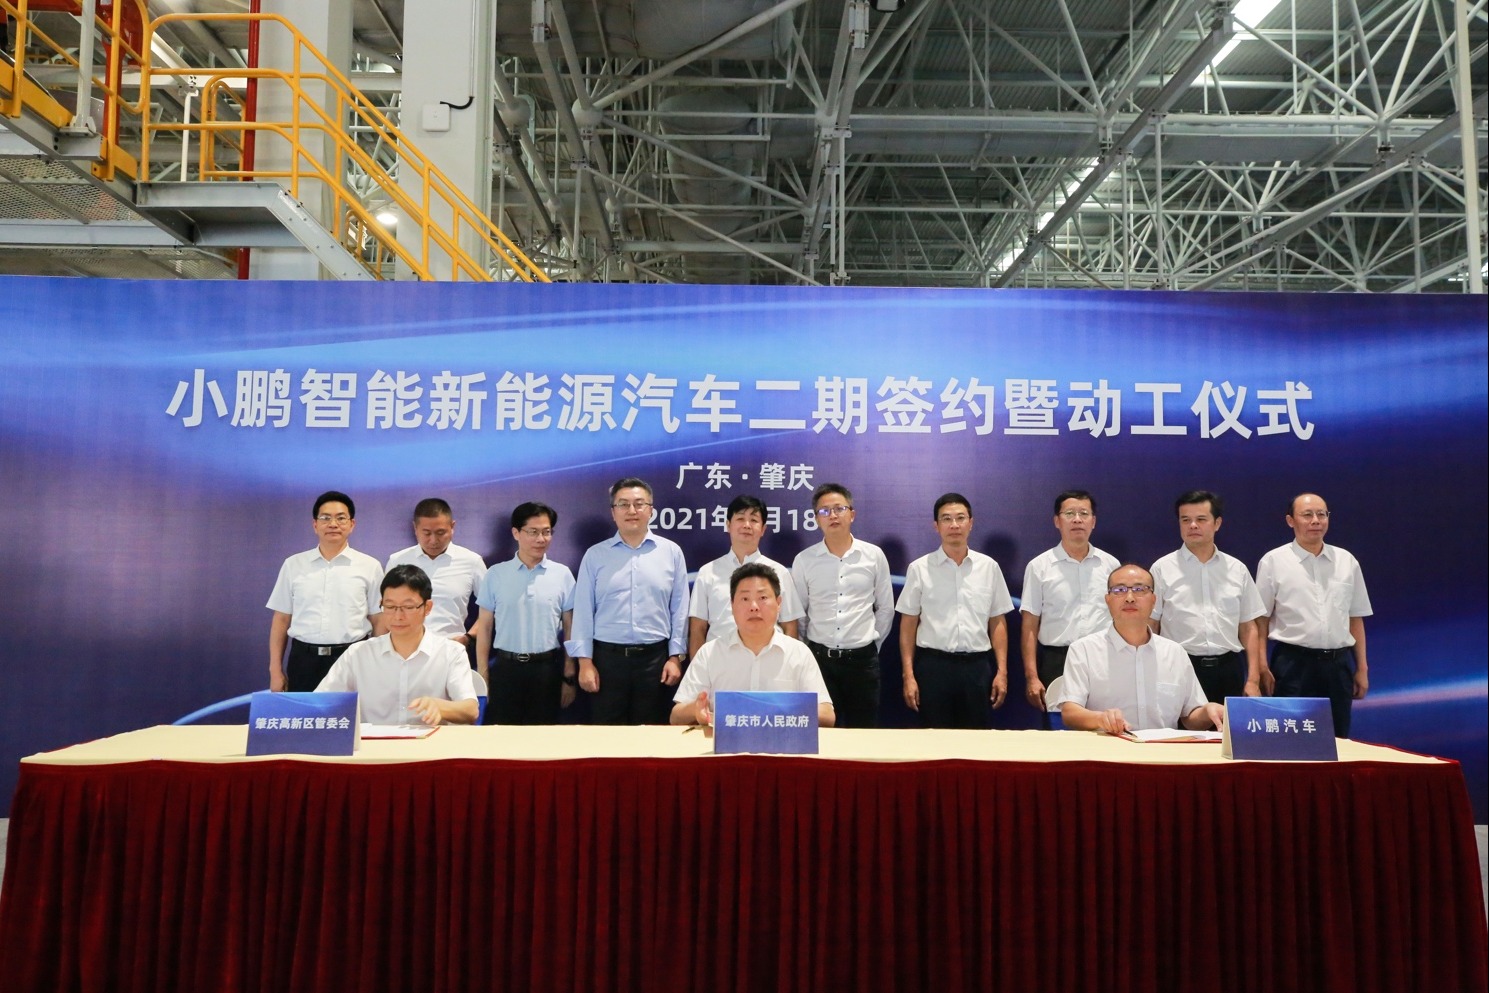 小鹏汽车肇庆二期项目签约暨动工 整车设计年产能将达20万辆